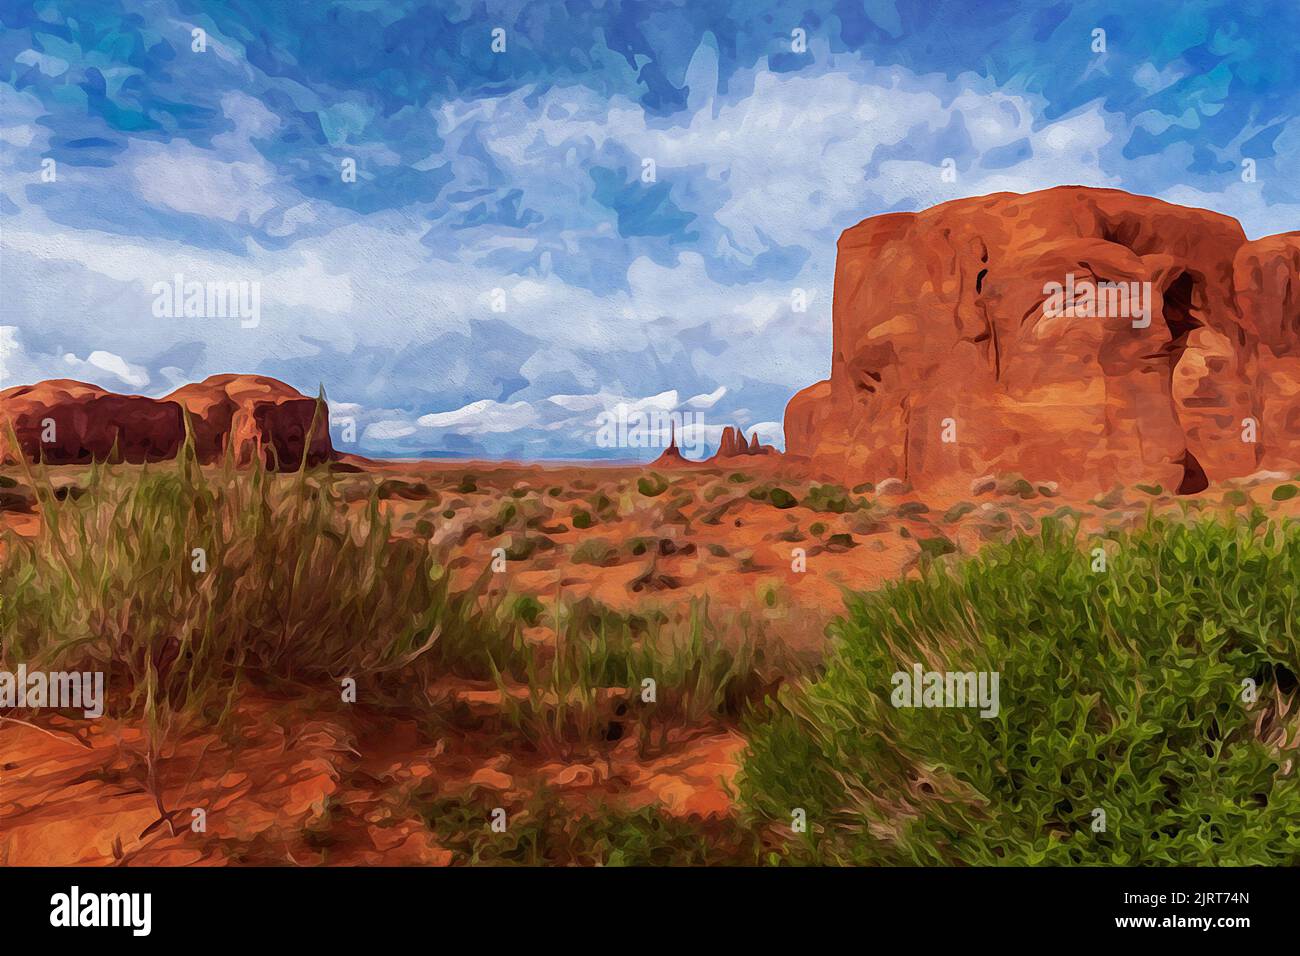 Création numérique de peinture aquarelle d'une scène tranquille du sud-ouest avec totem pôle au loin dans Monument Valley. Banque D'Images